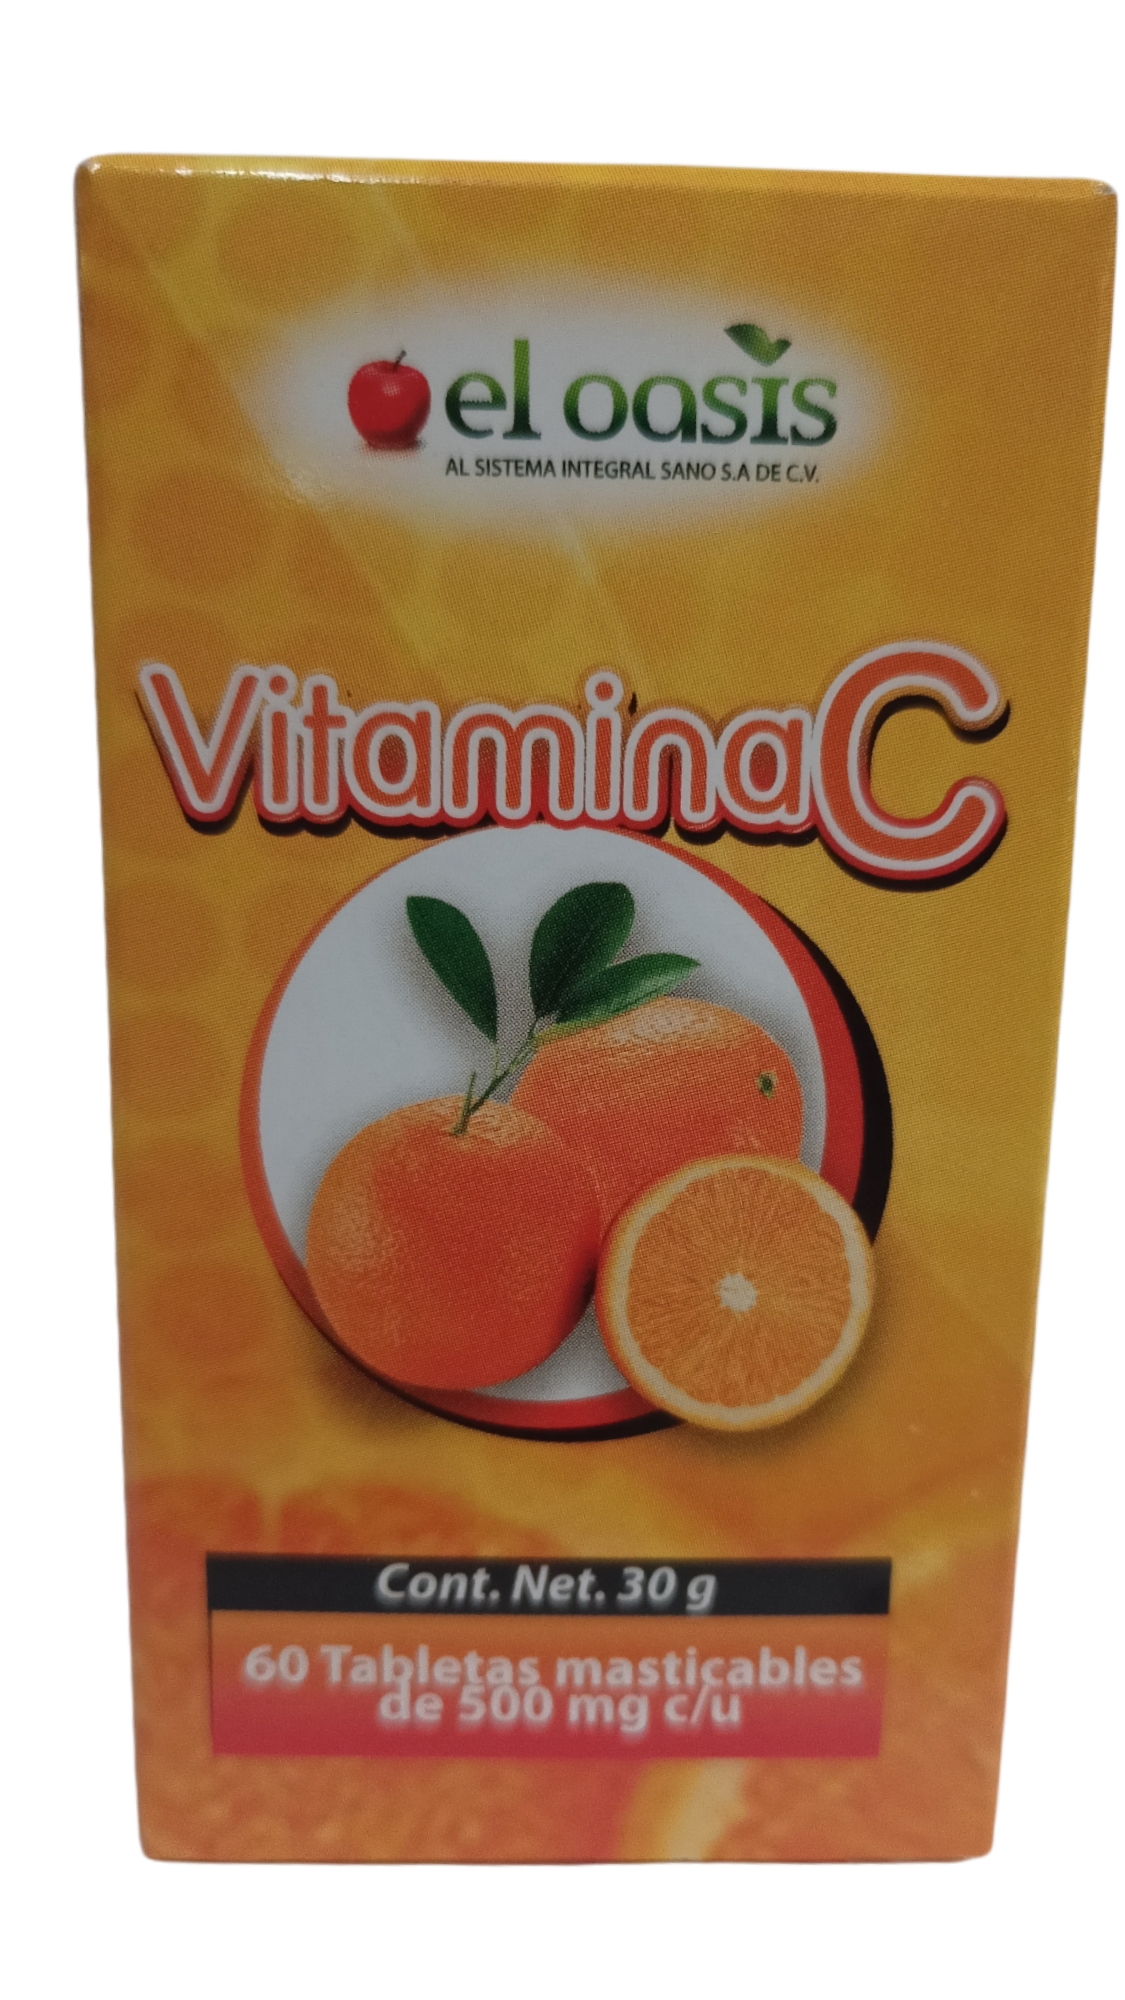 Vitamina C con 60 tabletas